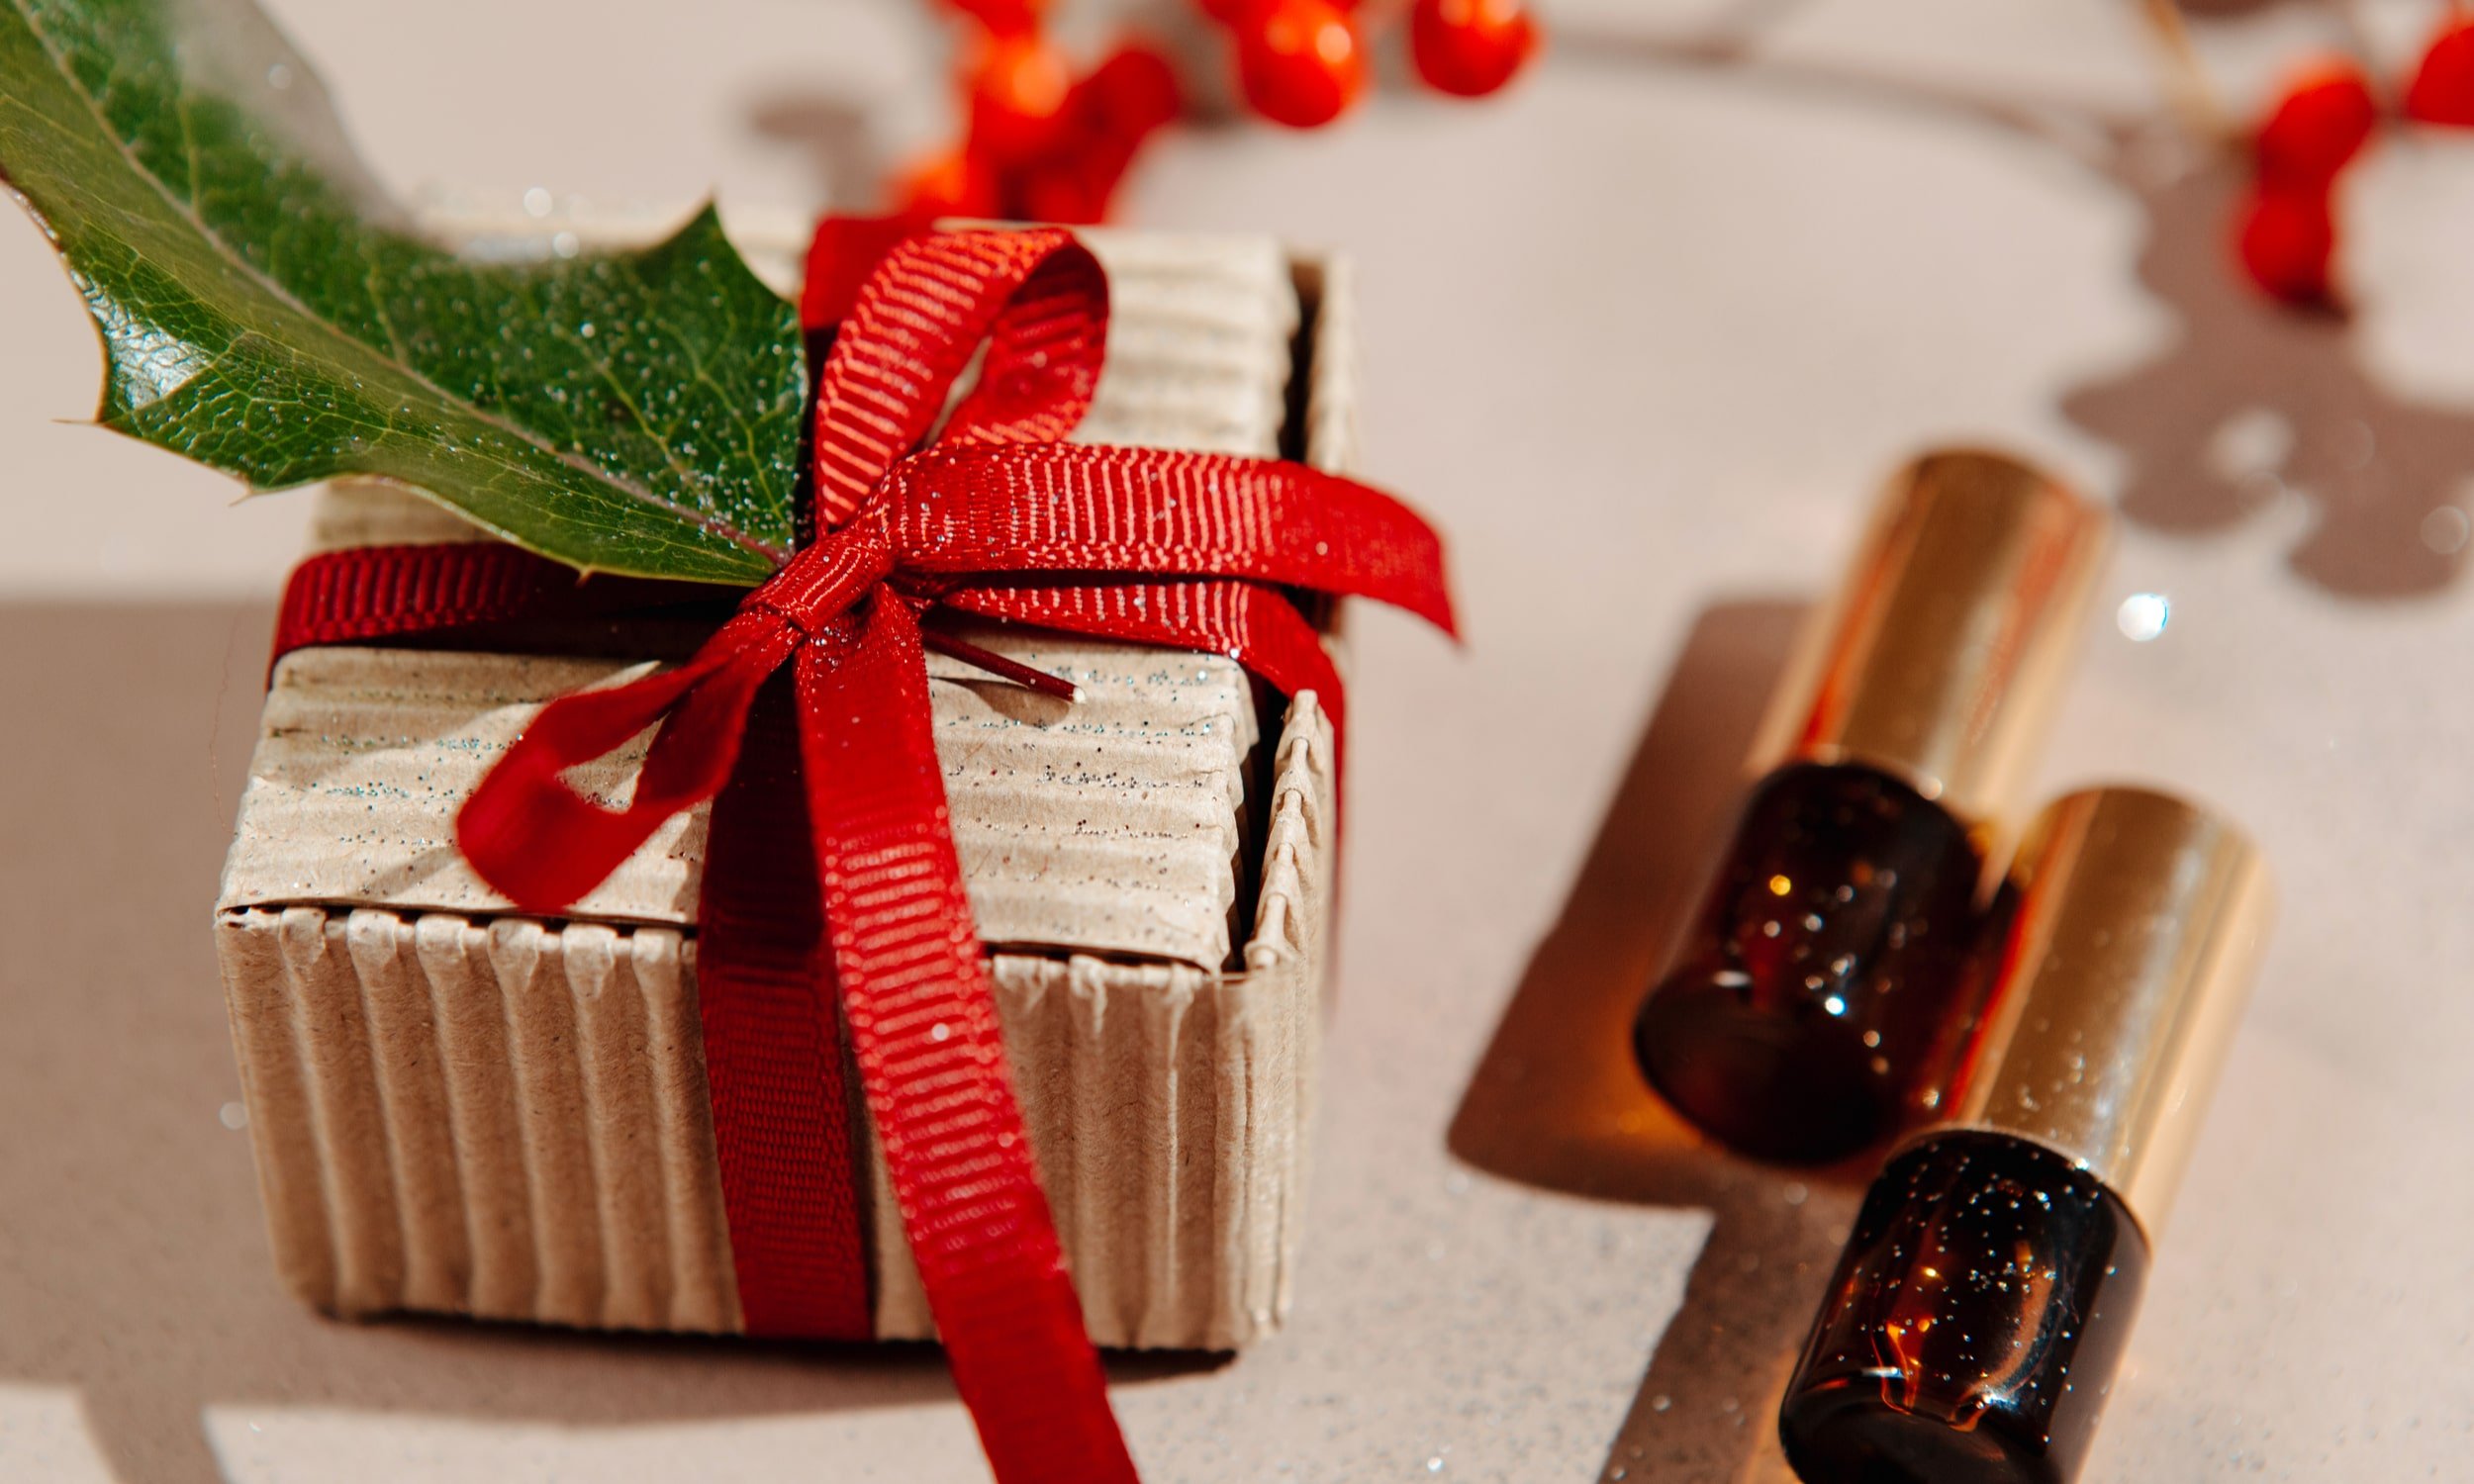 парфюмерия и косметика в подарок на рождество